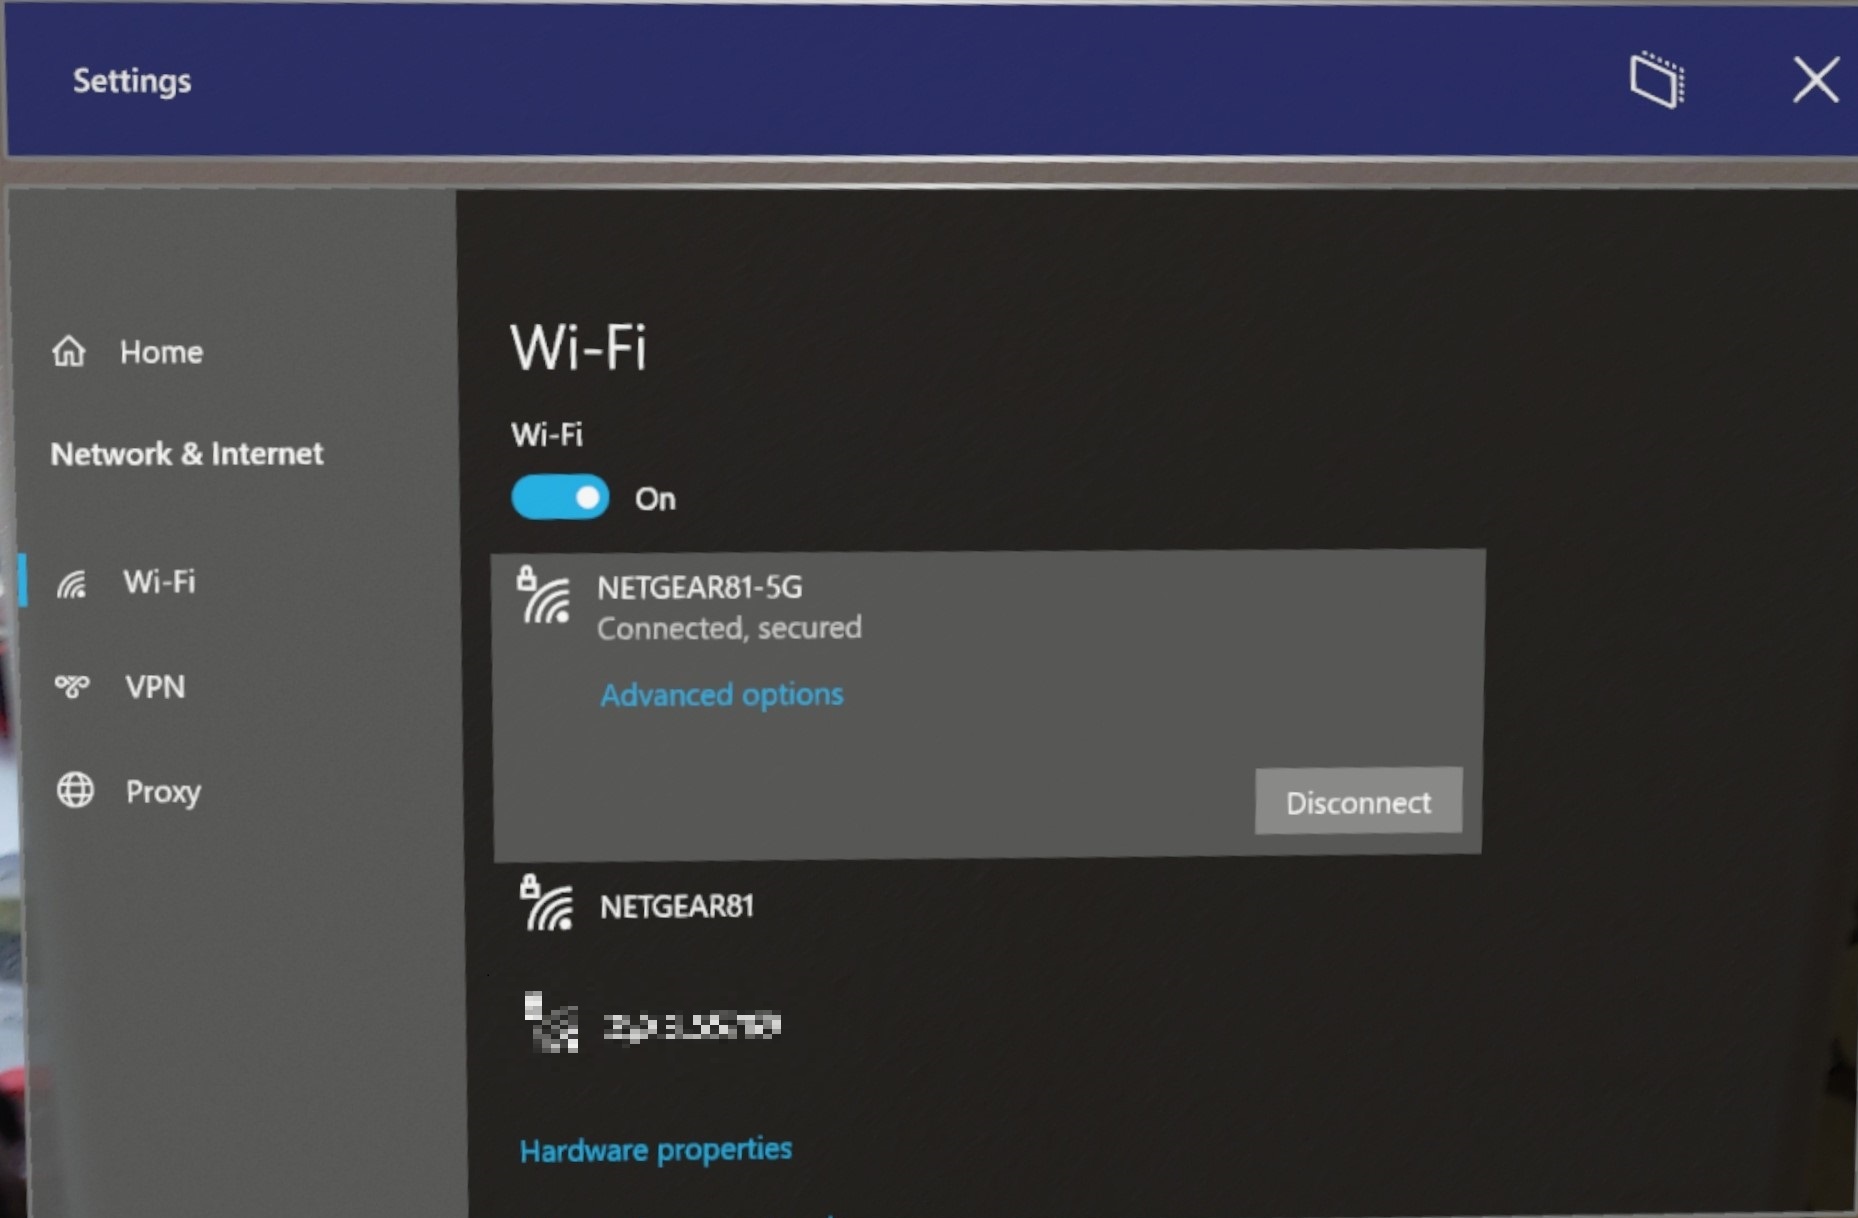 Wi-Fi network settings interface